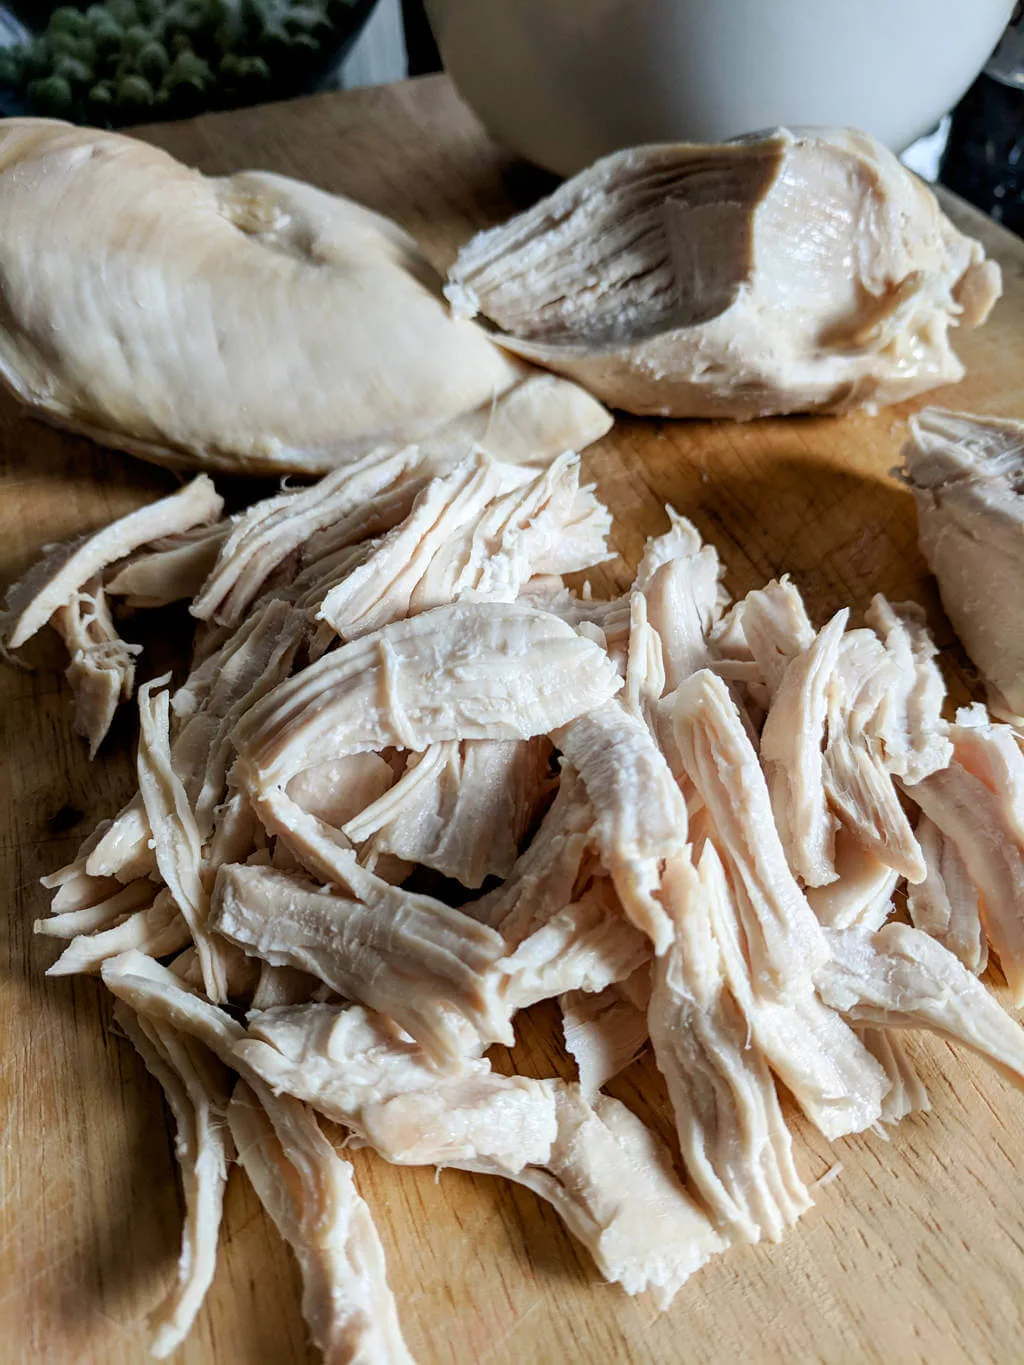 Shredded chicken breasts